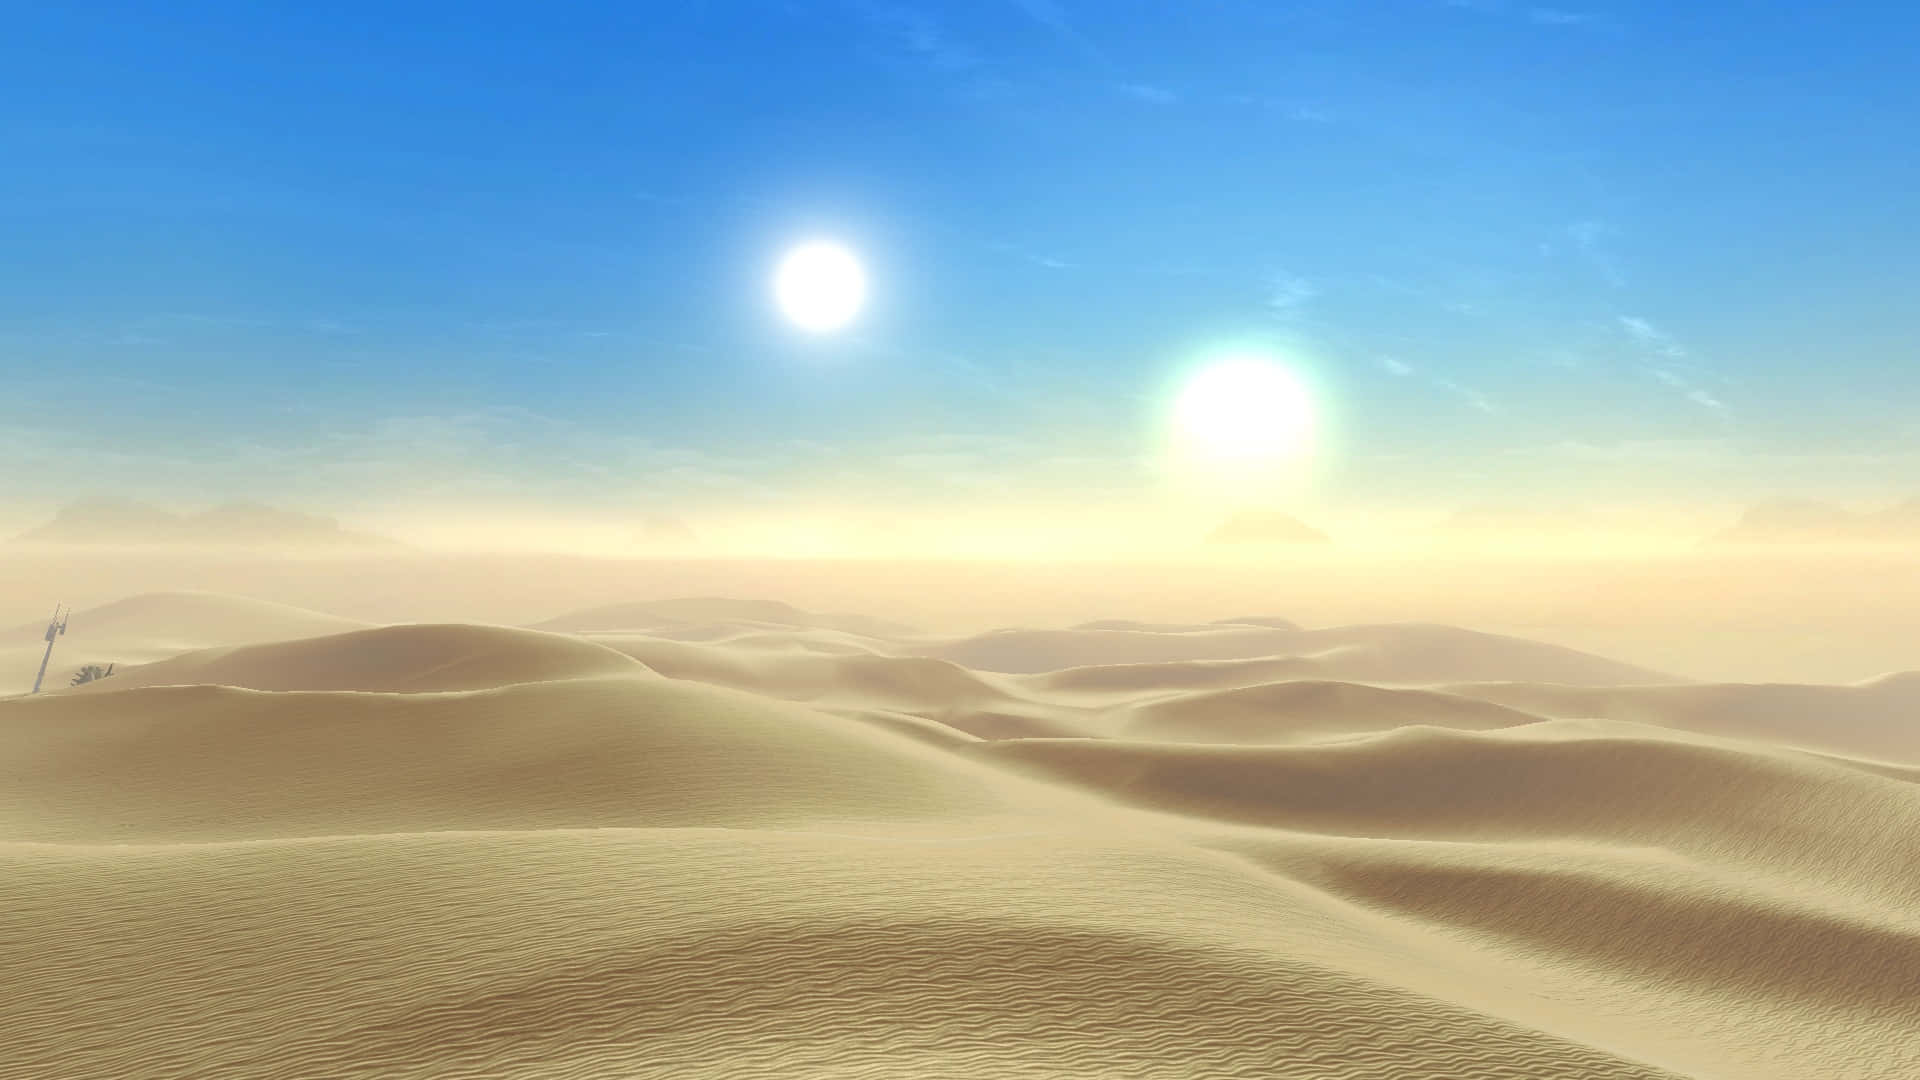 Fondode Pantalla Con Un Brillante Sol En El Fondo De Tatooine